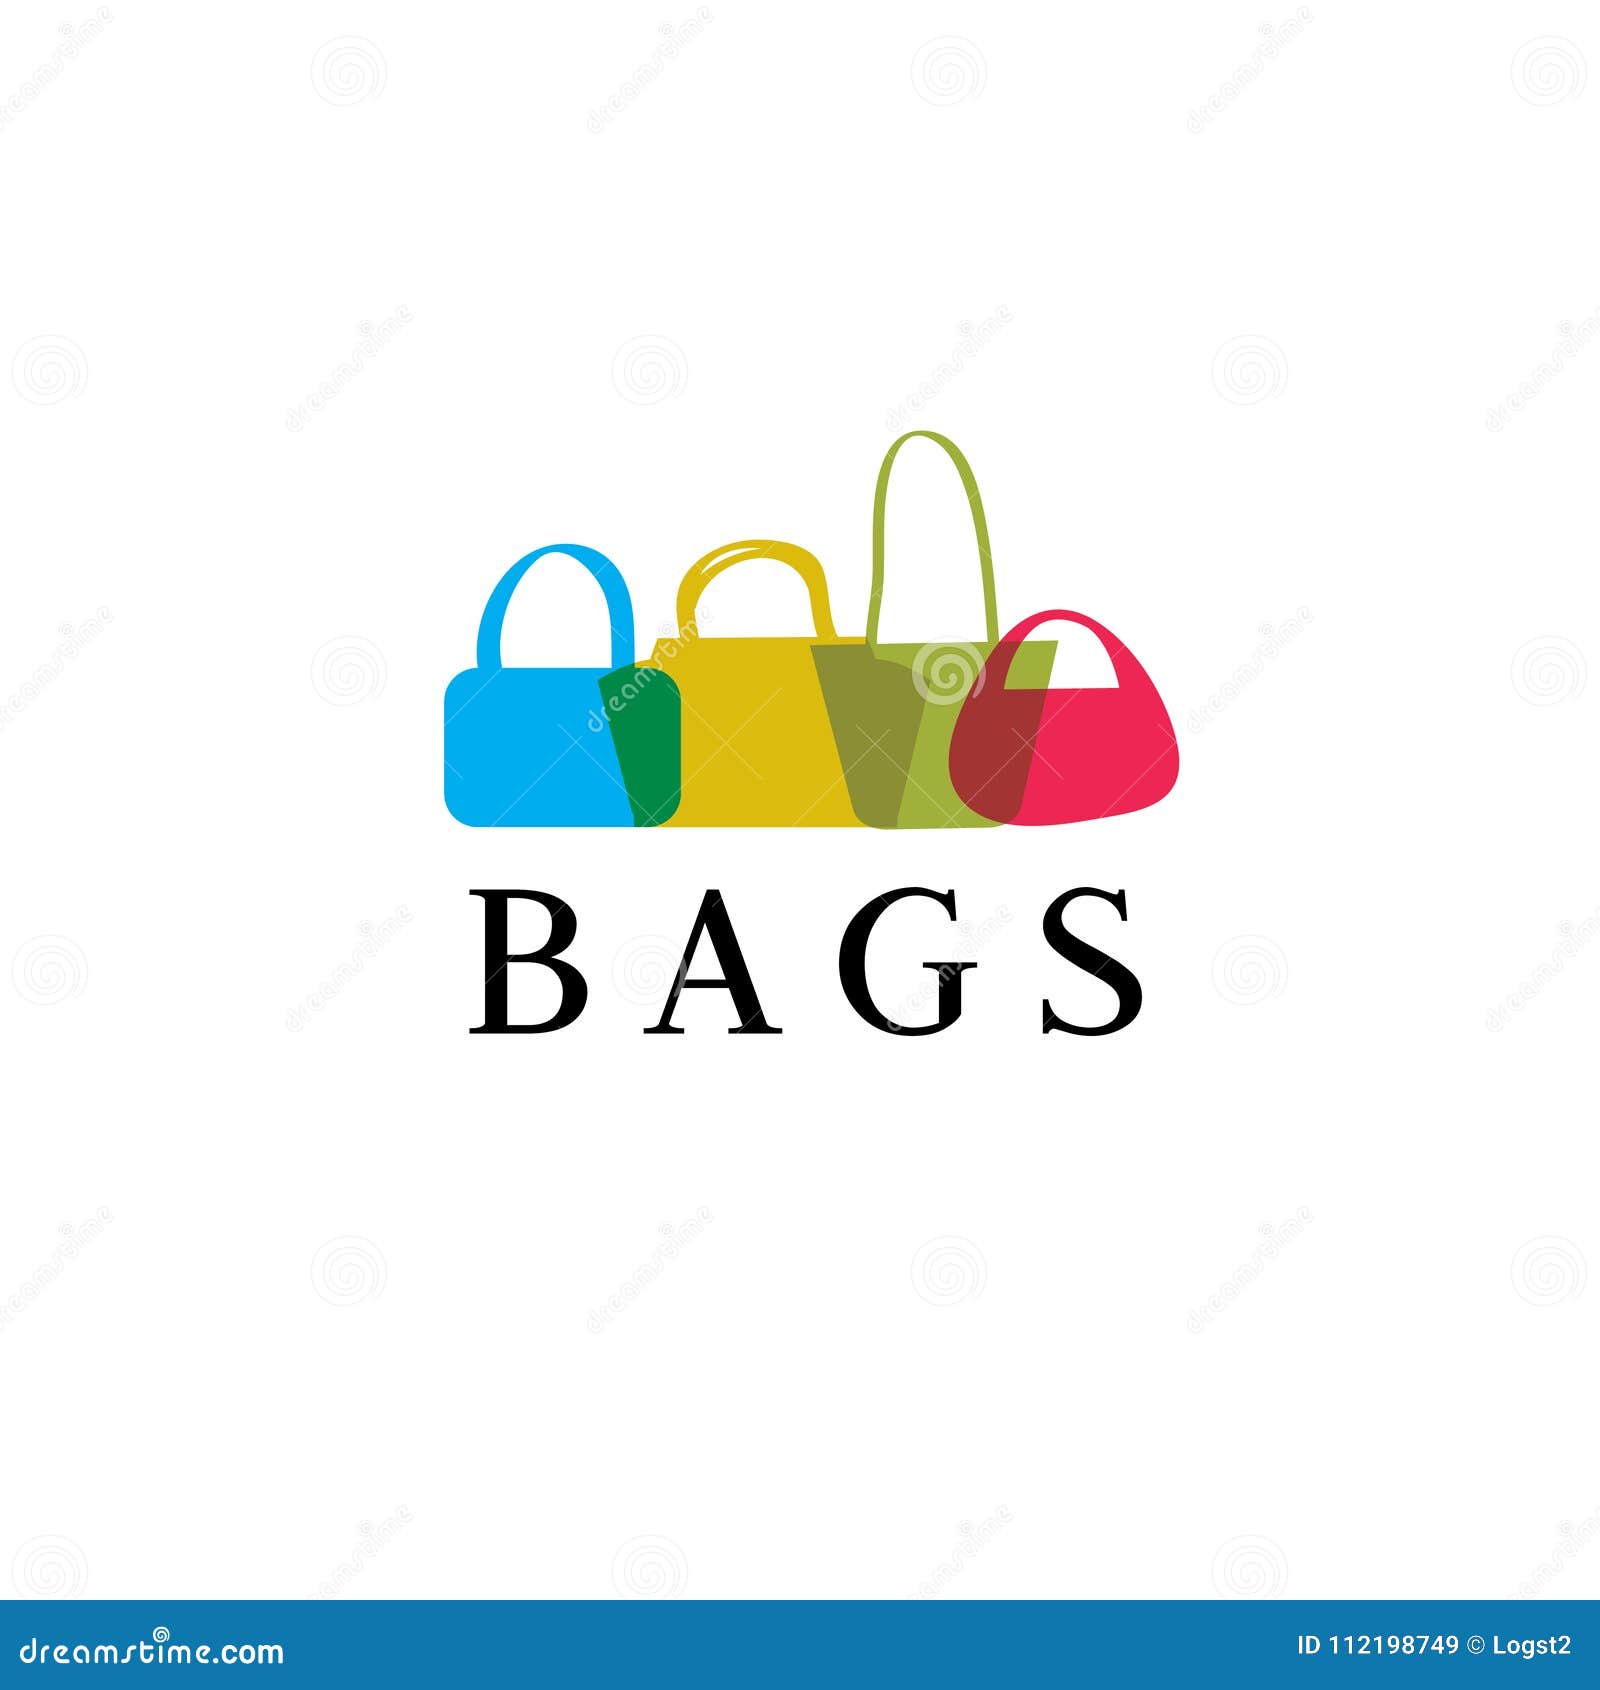 Logos Vector Bags